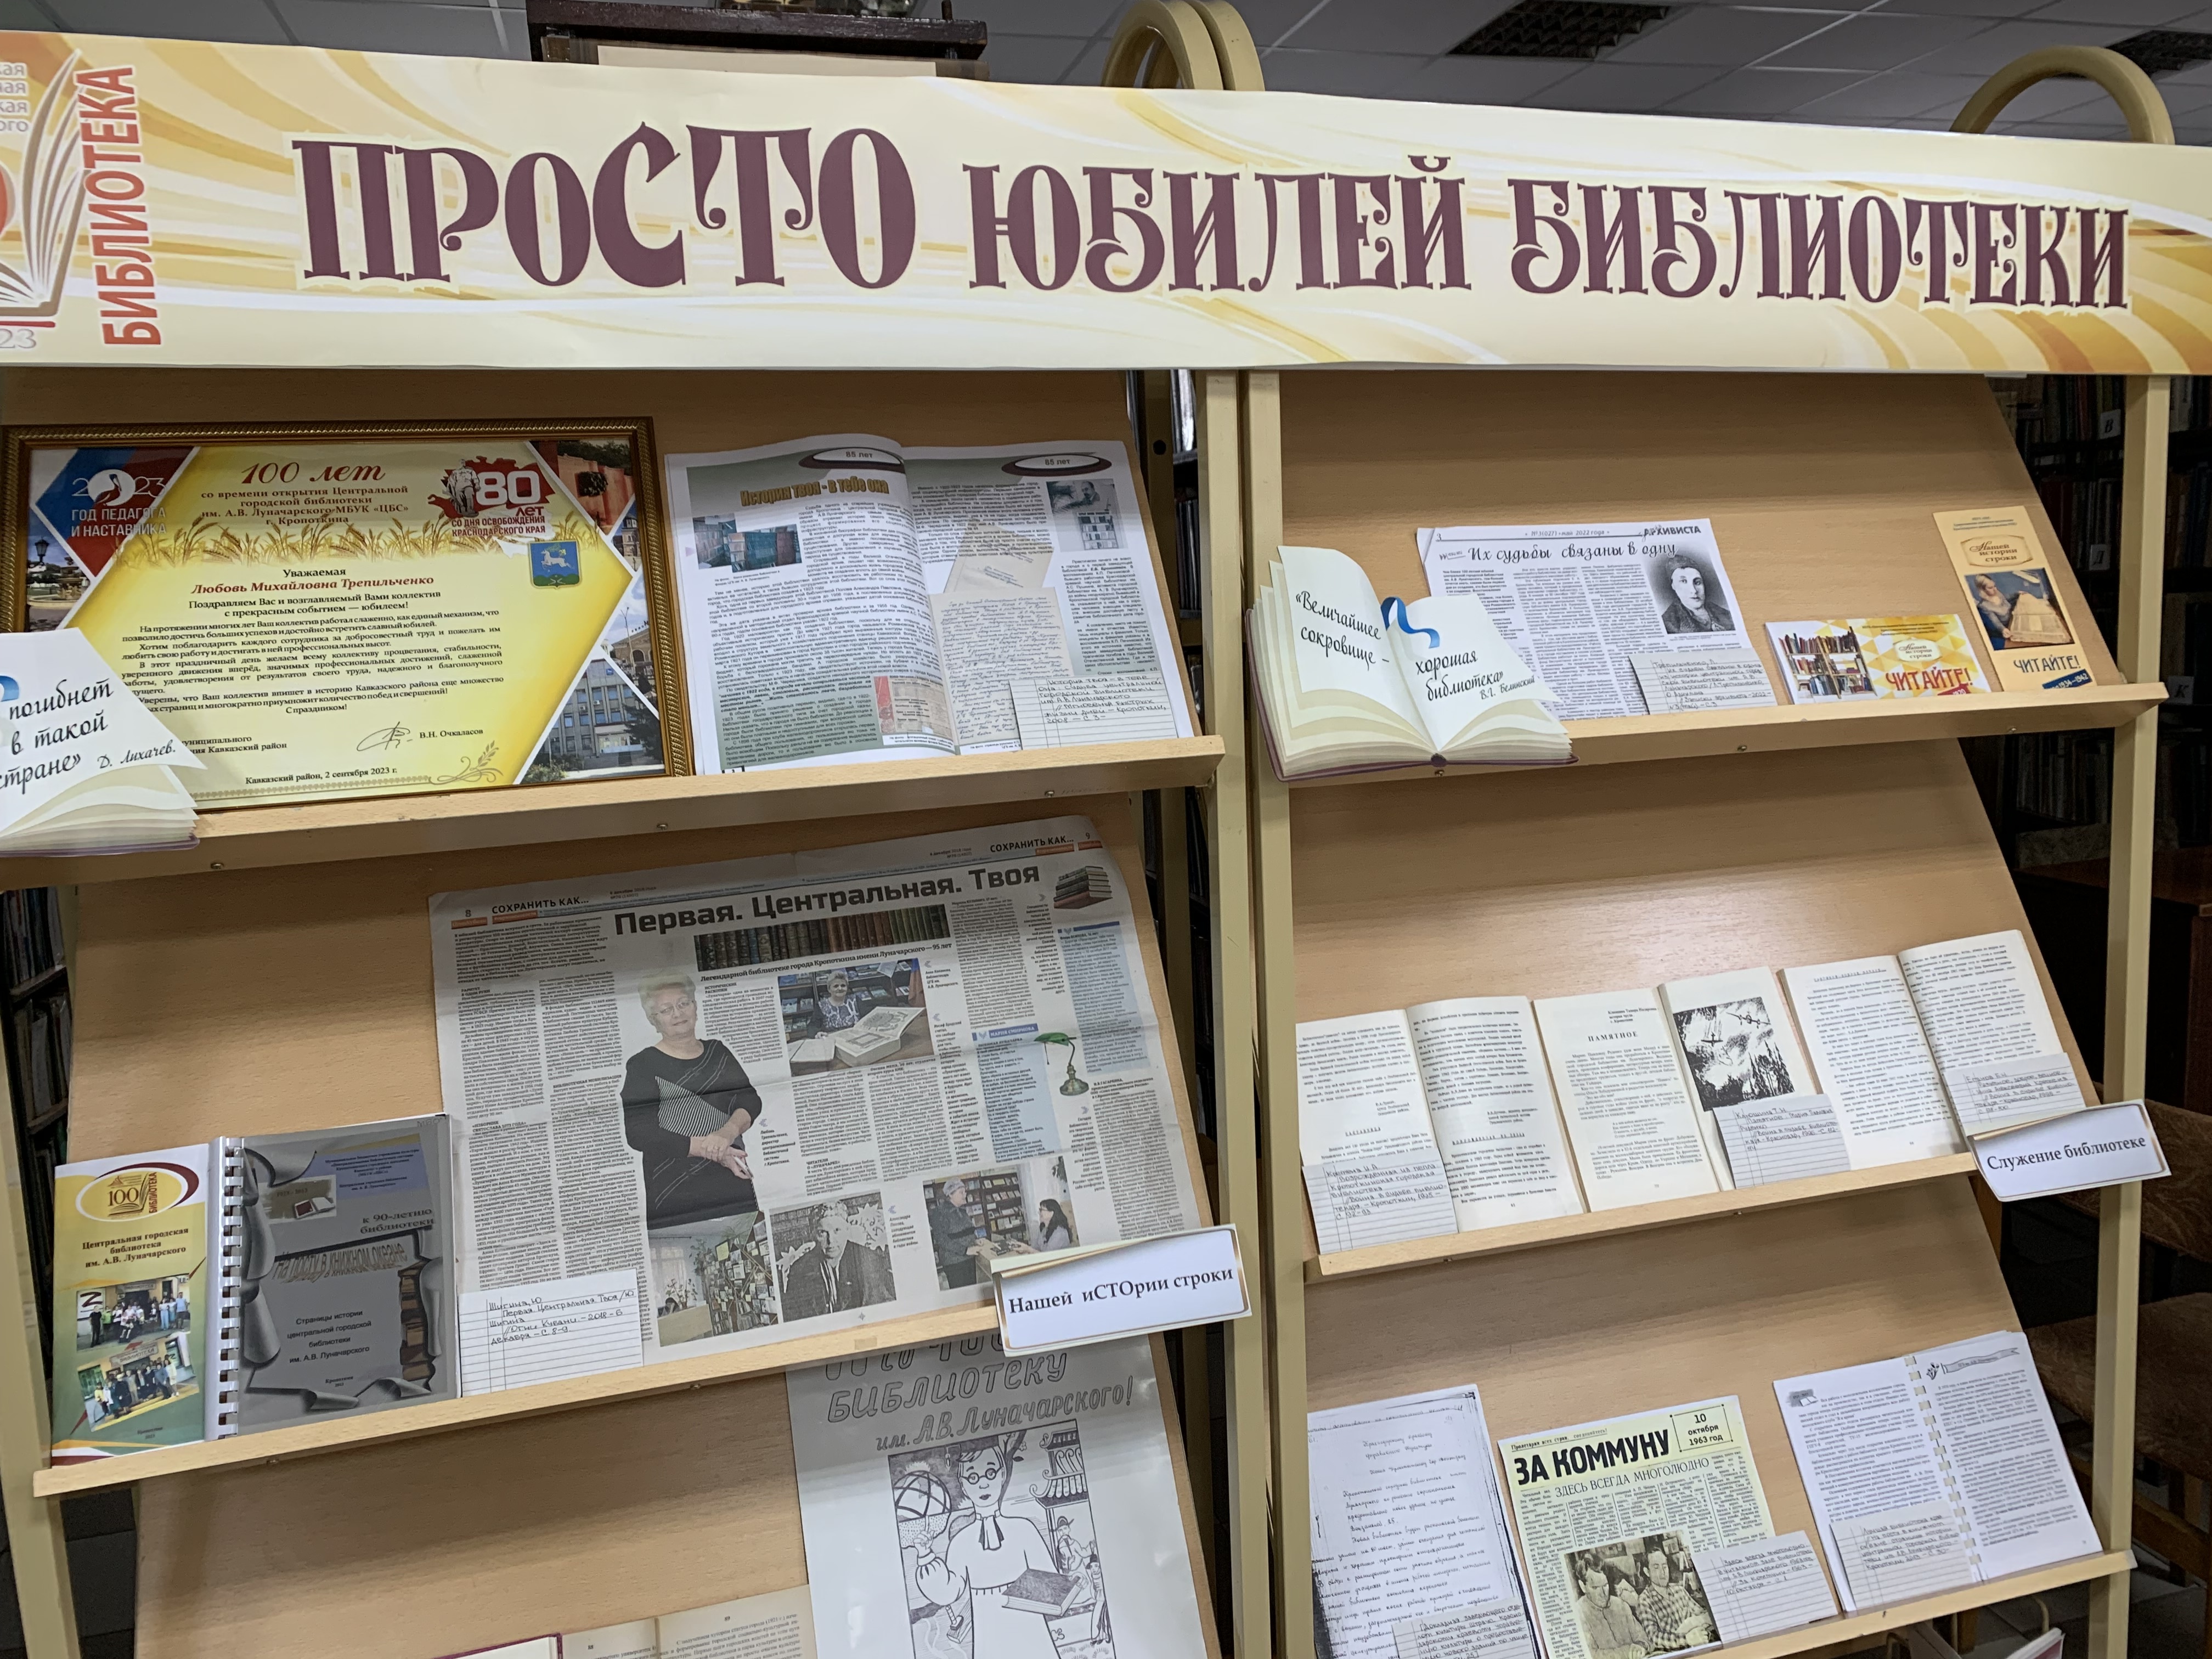 Сегодня Центральная городская библиотека им. А.В.Луначарского отметила свой вековой юбилей